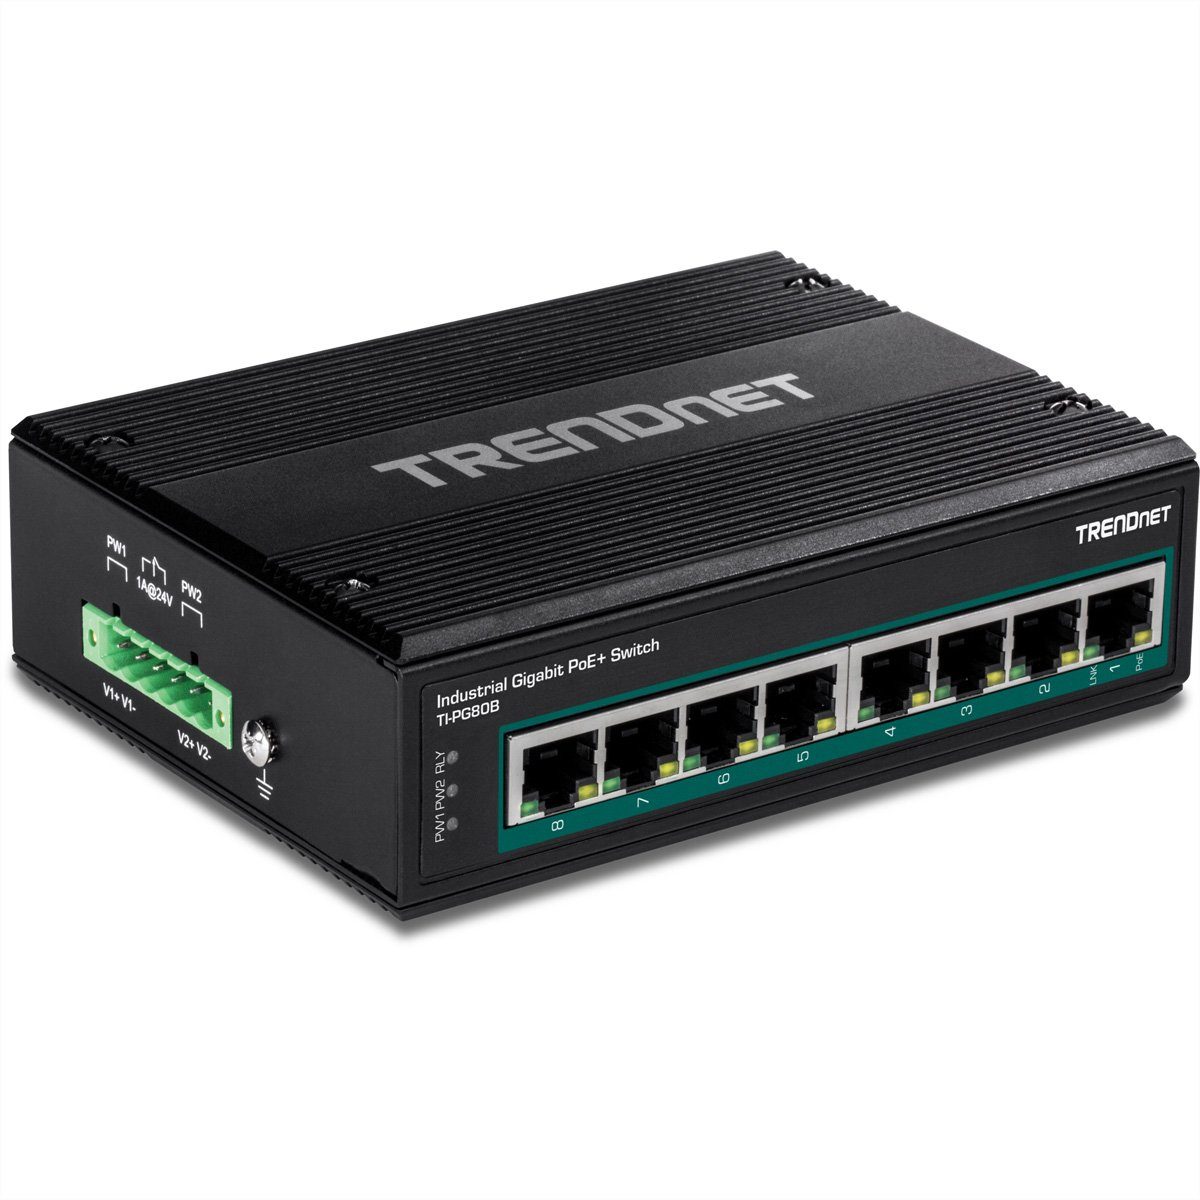 Trendnet TI-PG80B Netzwerk-Switch (24-56V) DIN-Rail Gigabit 8-Port PoE+ Industrial Switch